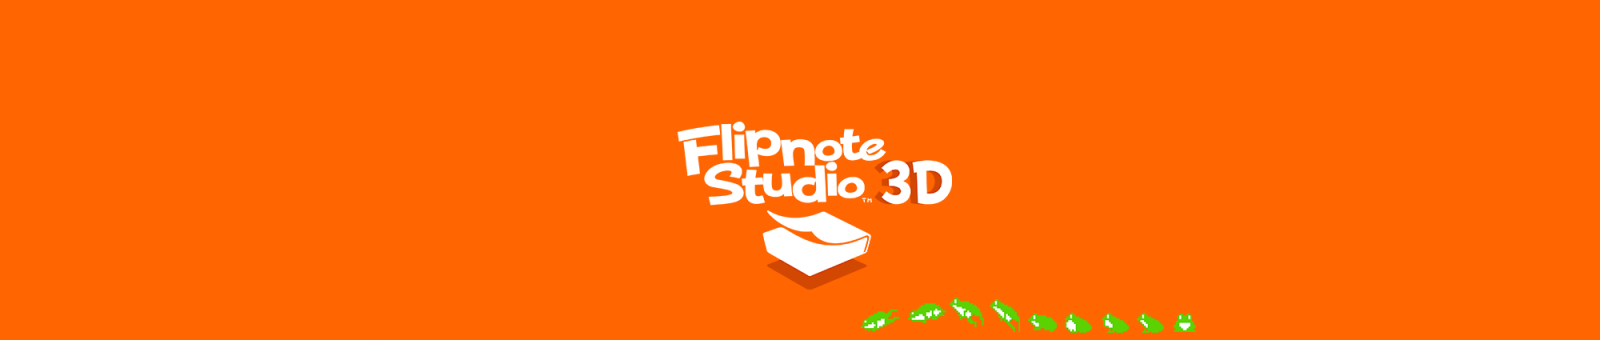 Flipnote Studio Download For Mac